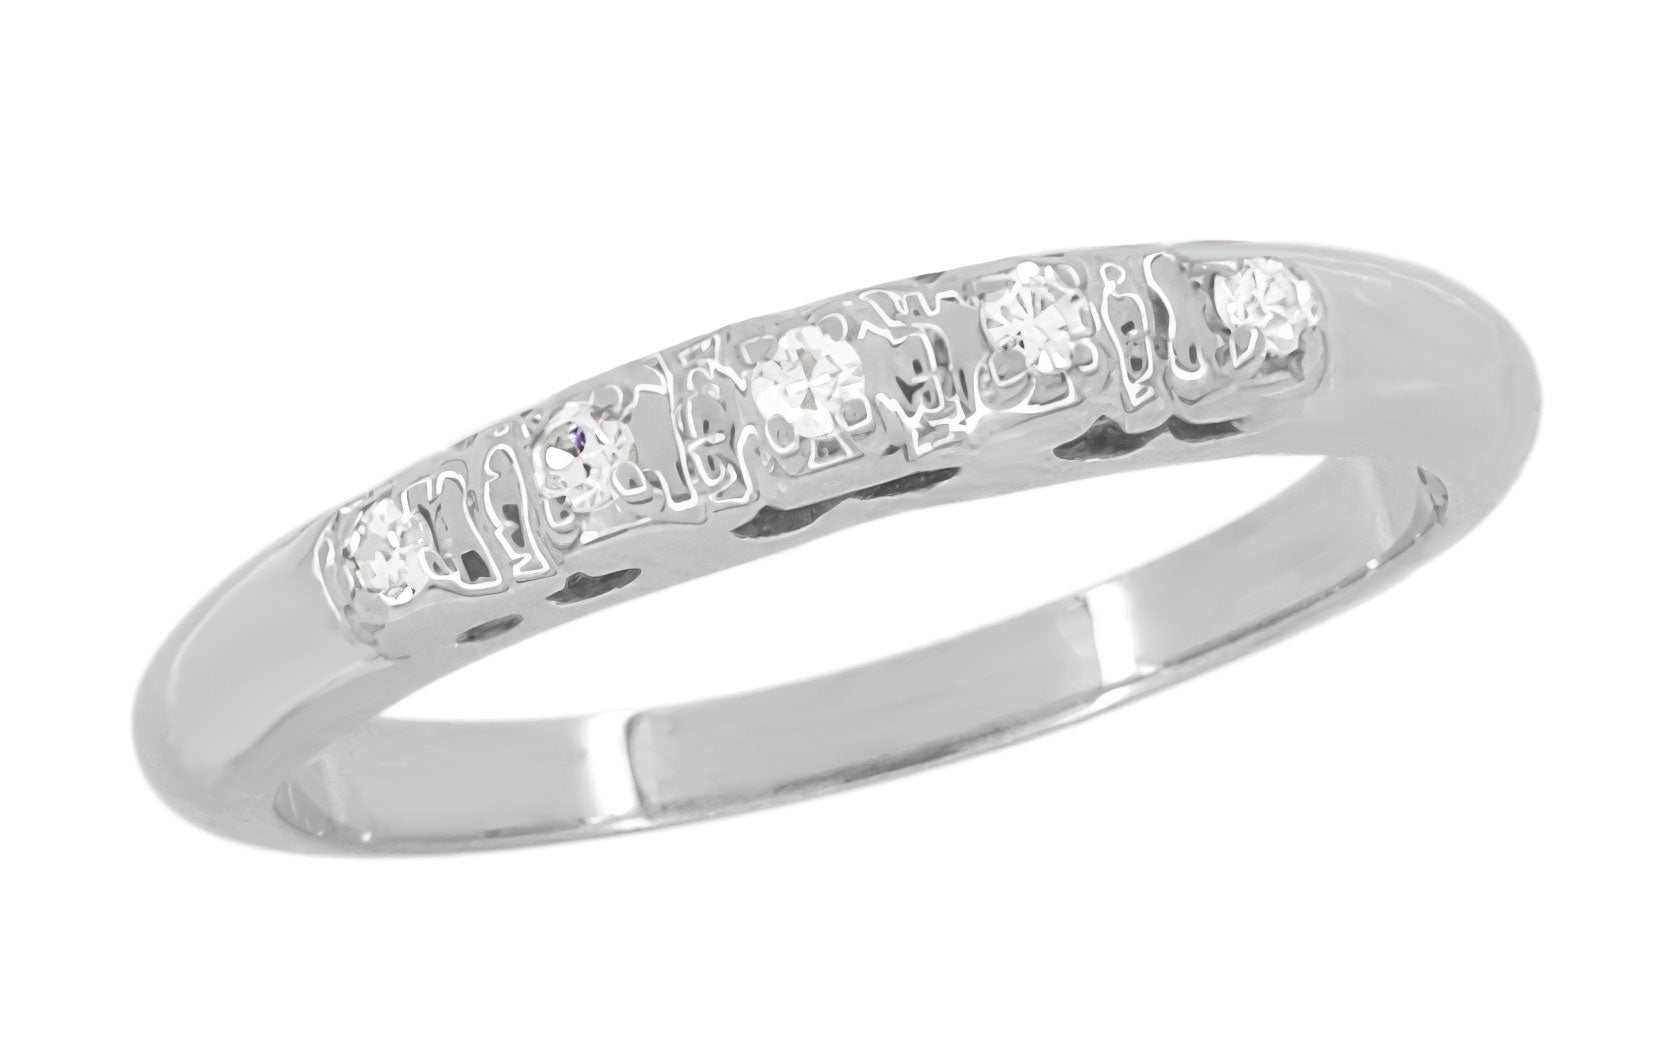 Belen 1940's 5 Diamond Vintage Wedding Ring in 14 Karat White Gold